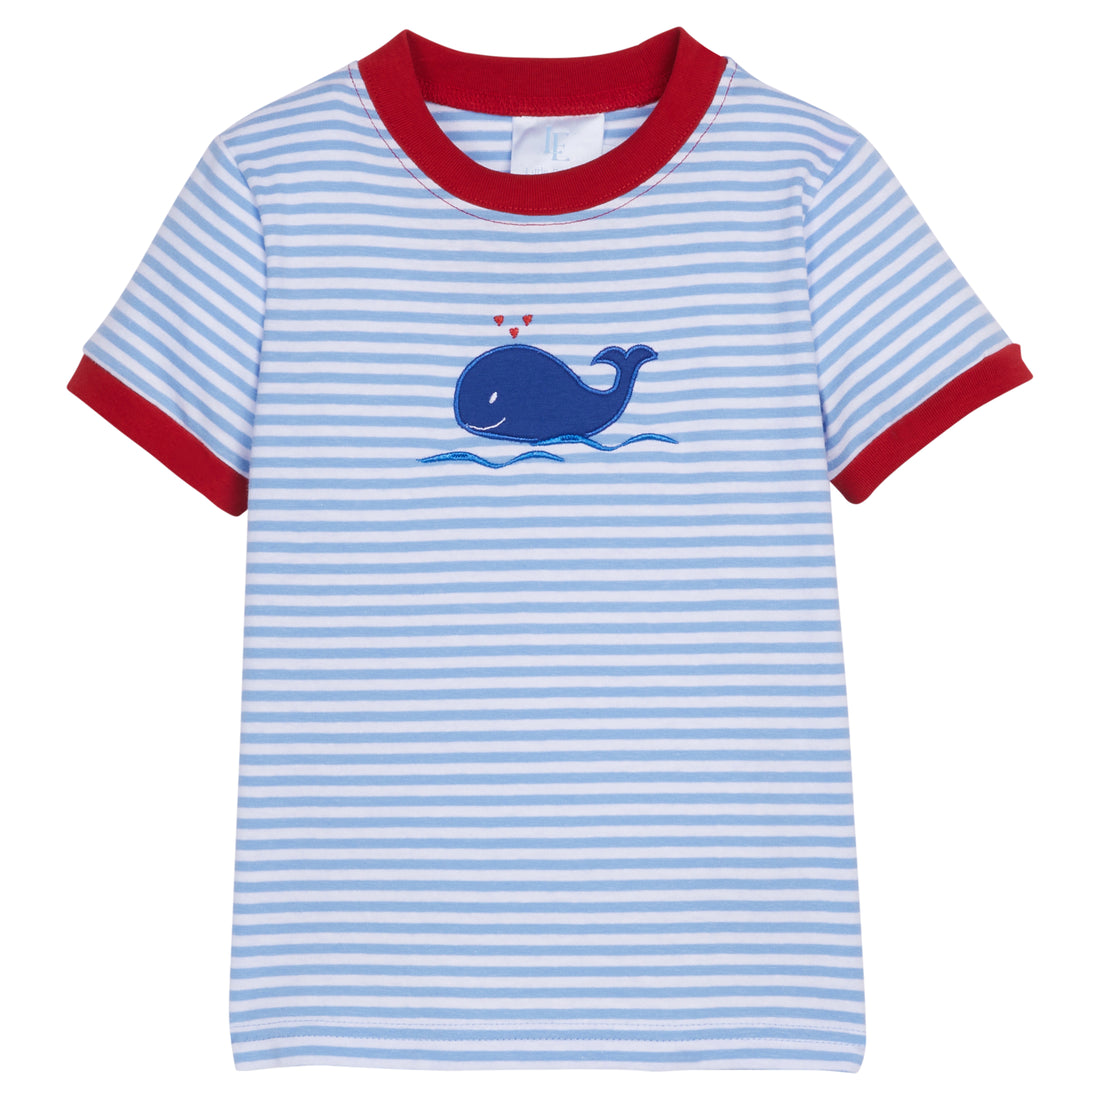 Little English | Daisies Applique T Shirt - Girl's Boutique Clothes 18M